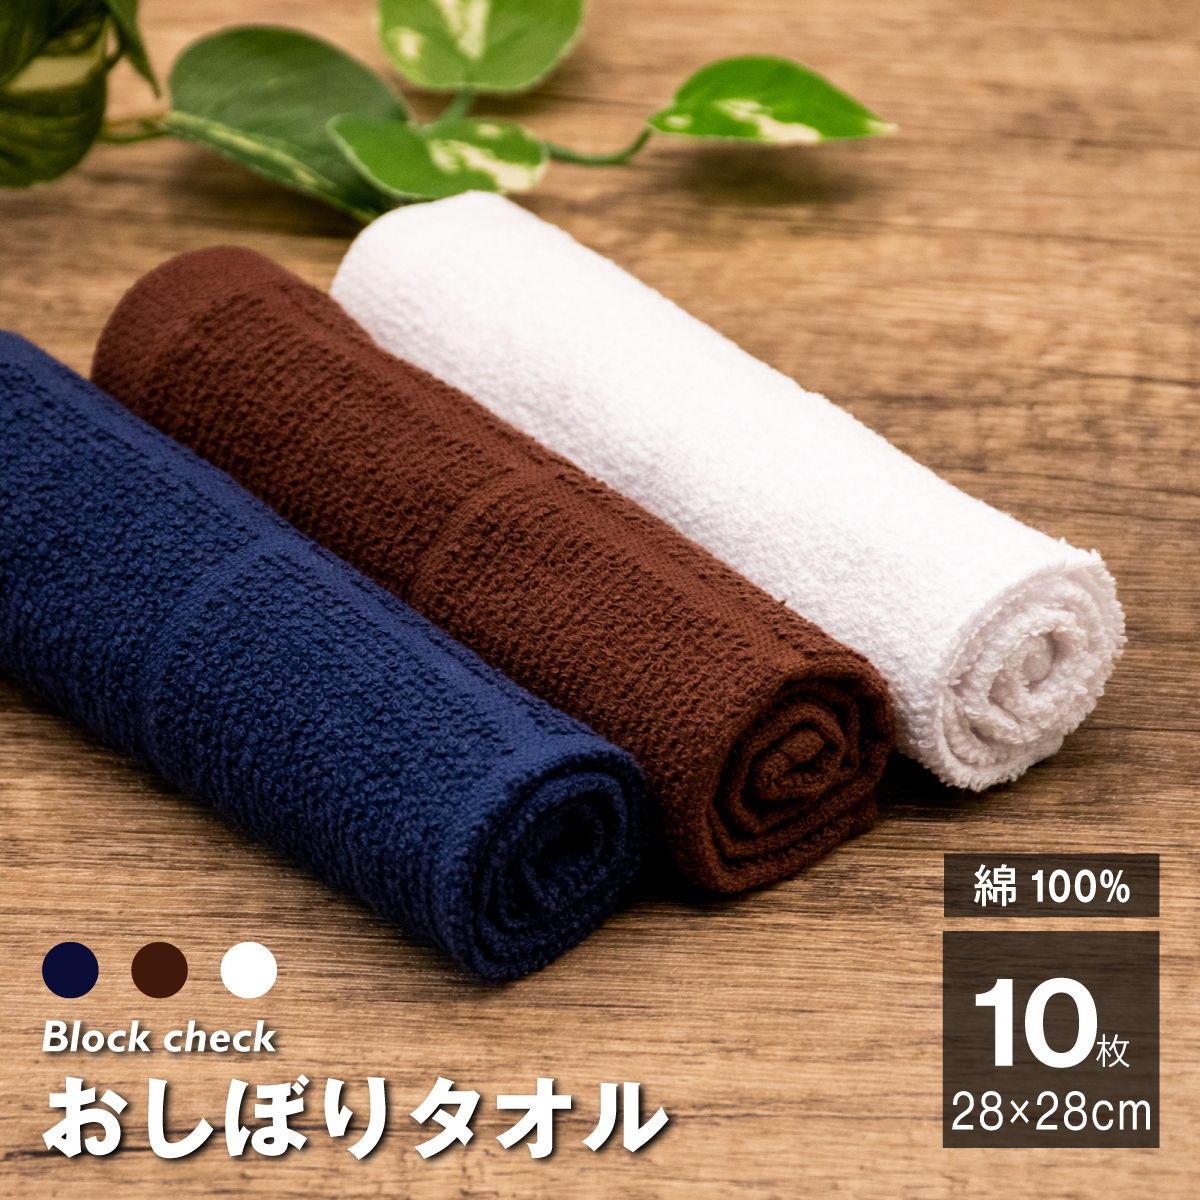 【楽天市場】おしぼり タオル 1000枚 セット 綿100% 茶 紺 70匁 